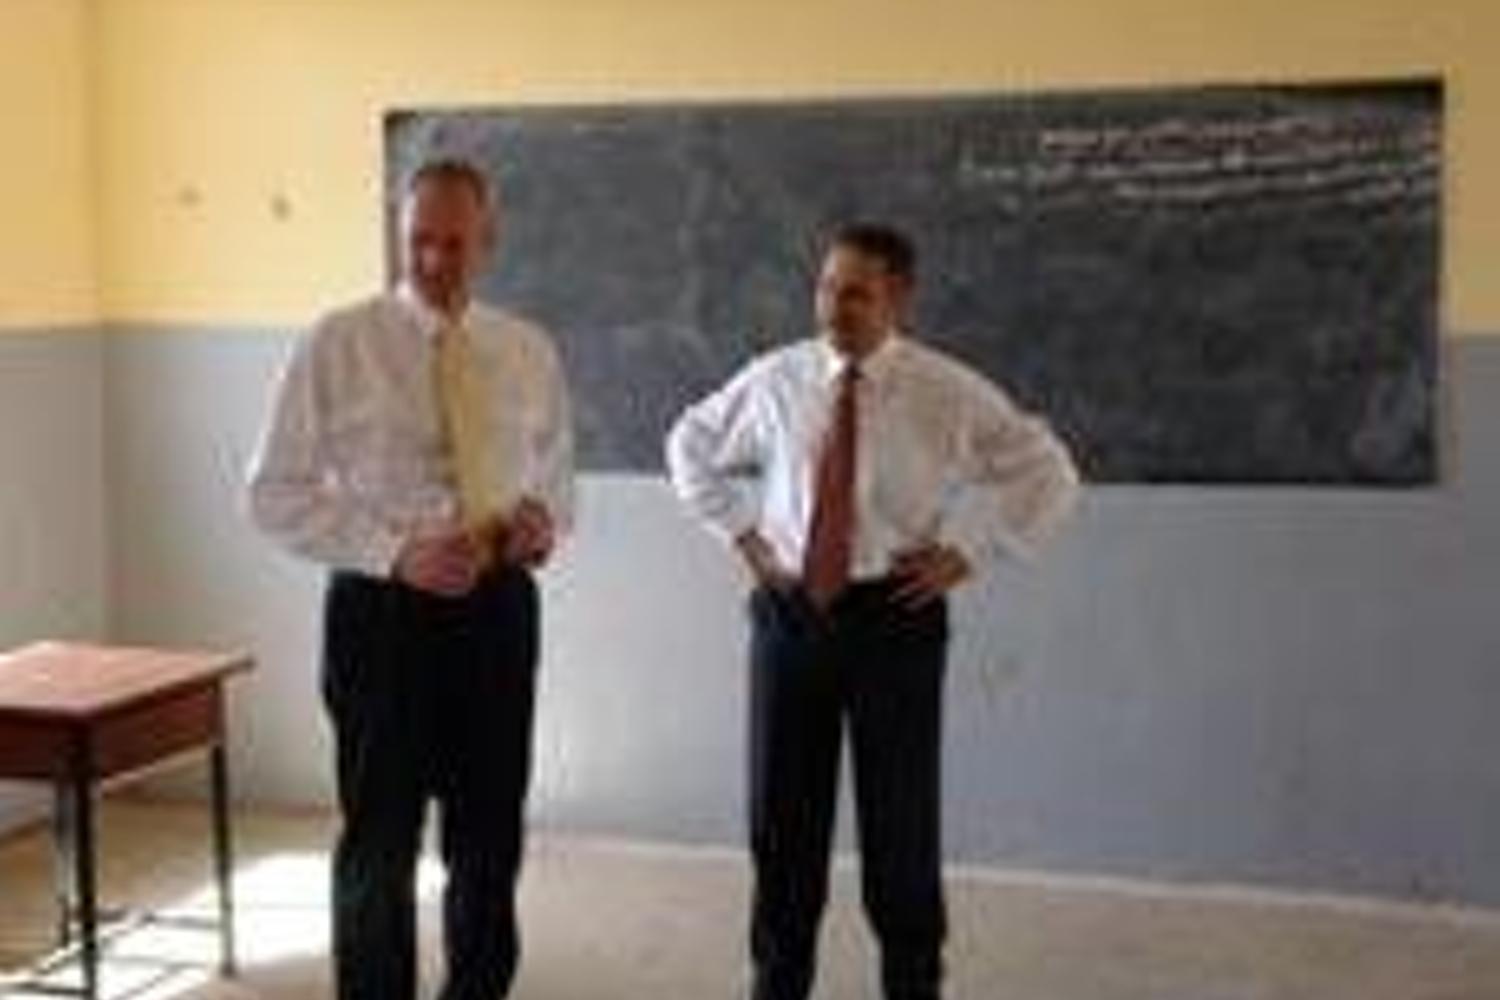 Bezirksapostel Ehrich und Apostel Bauer besichtigen einen Klassenraum (Fotos: NAK Süd)